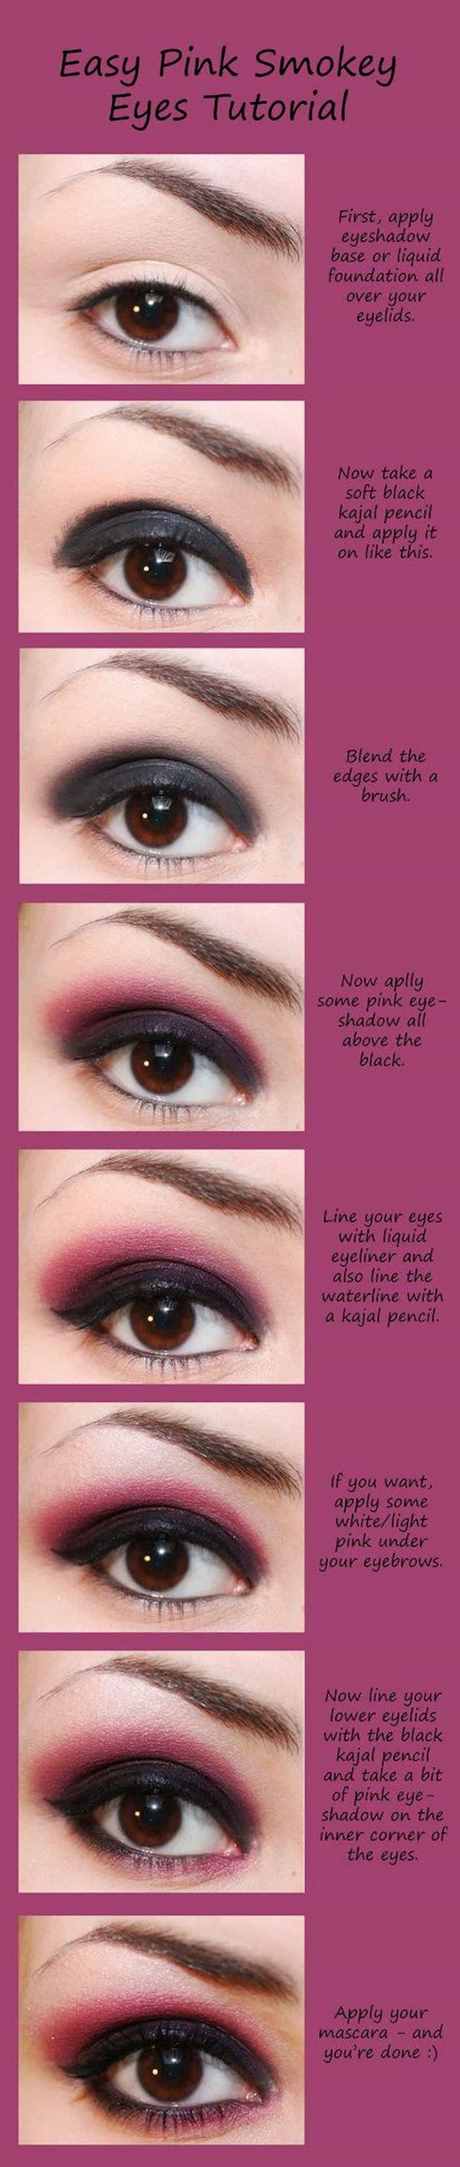 smoky-eye-makeup-tips-11_15 Smoky eye make-up tips